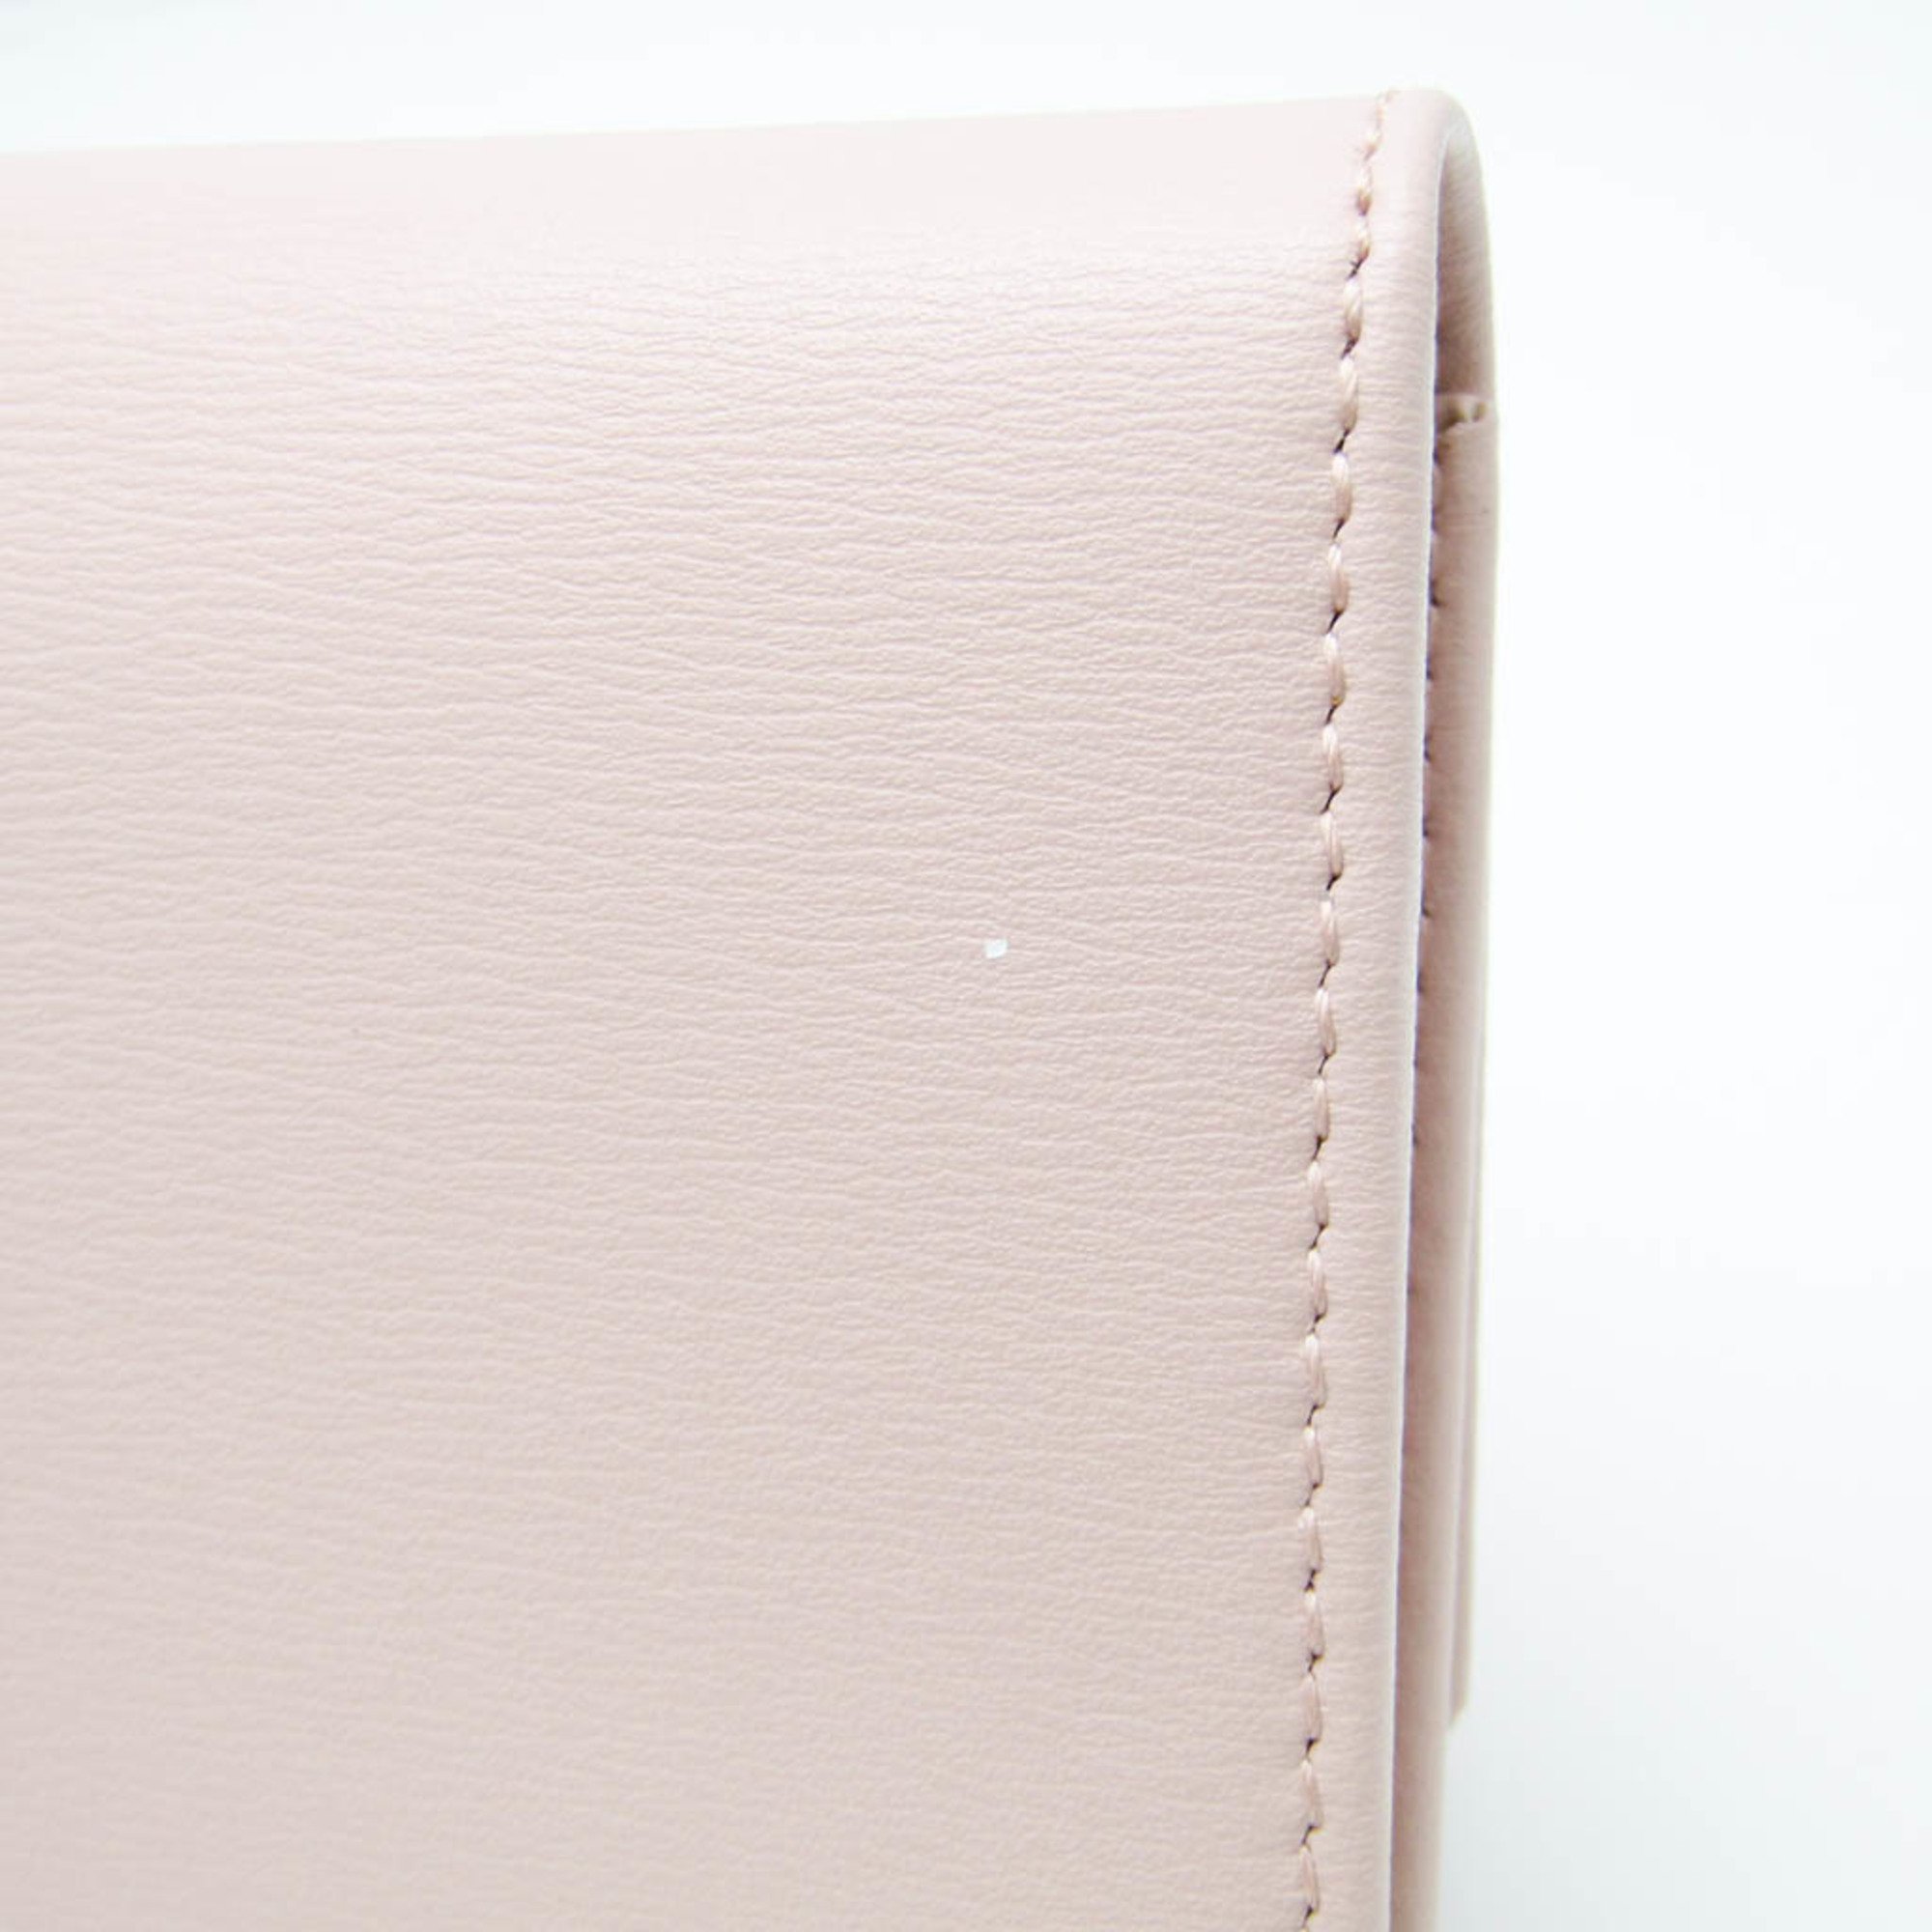 Salvatore Ferragamo KM-22 C991 Women's Leather Long Wallet (bi-fold) Light Pink